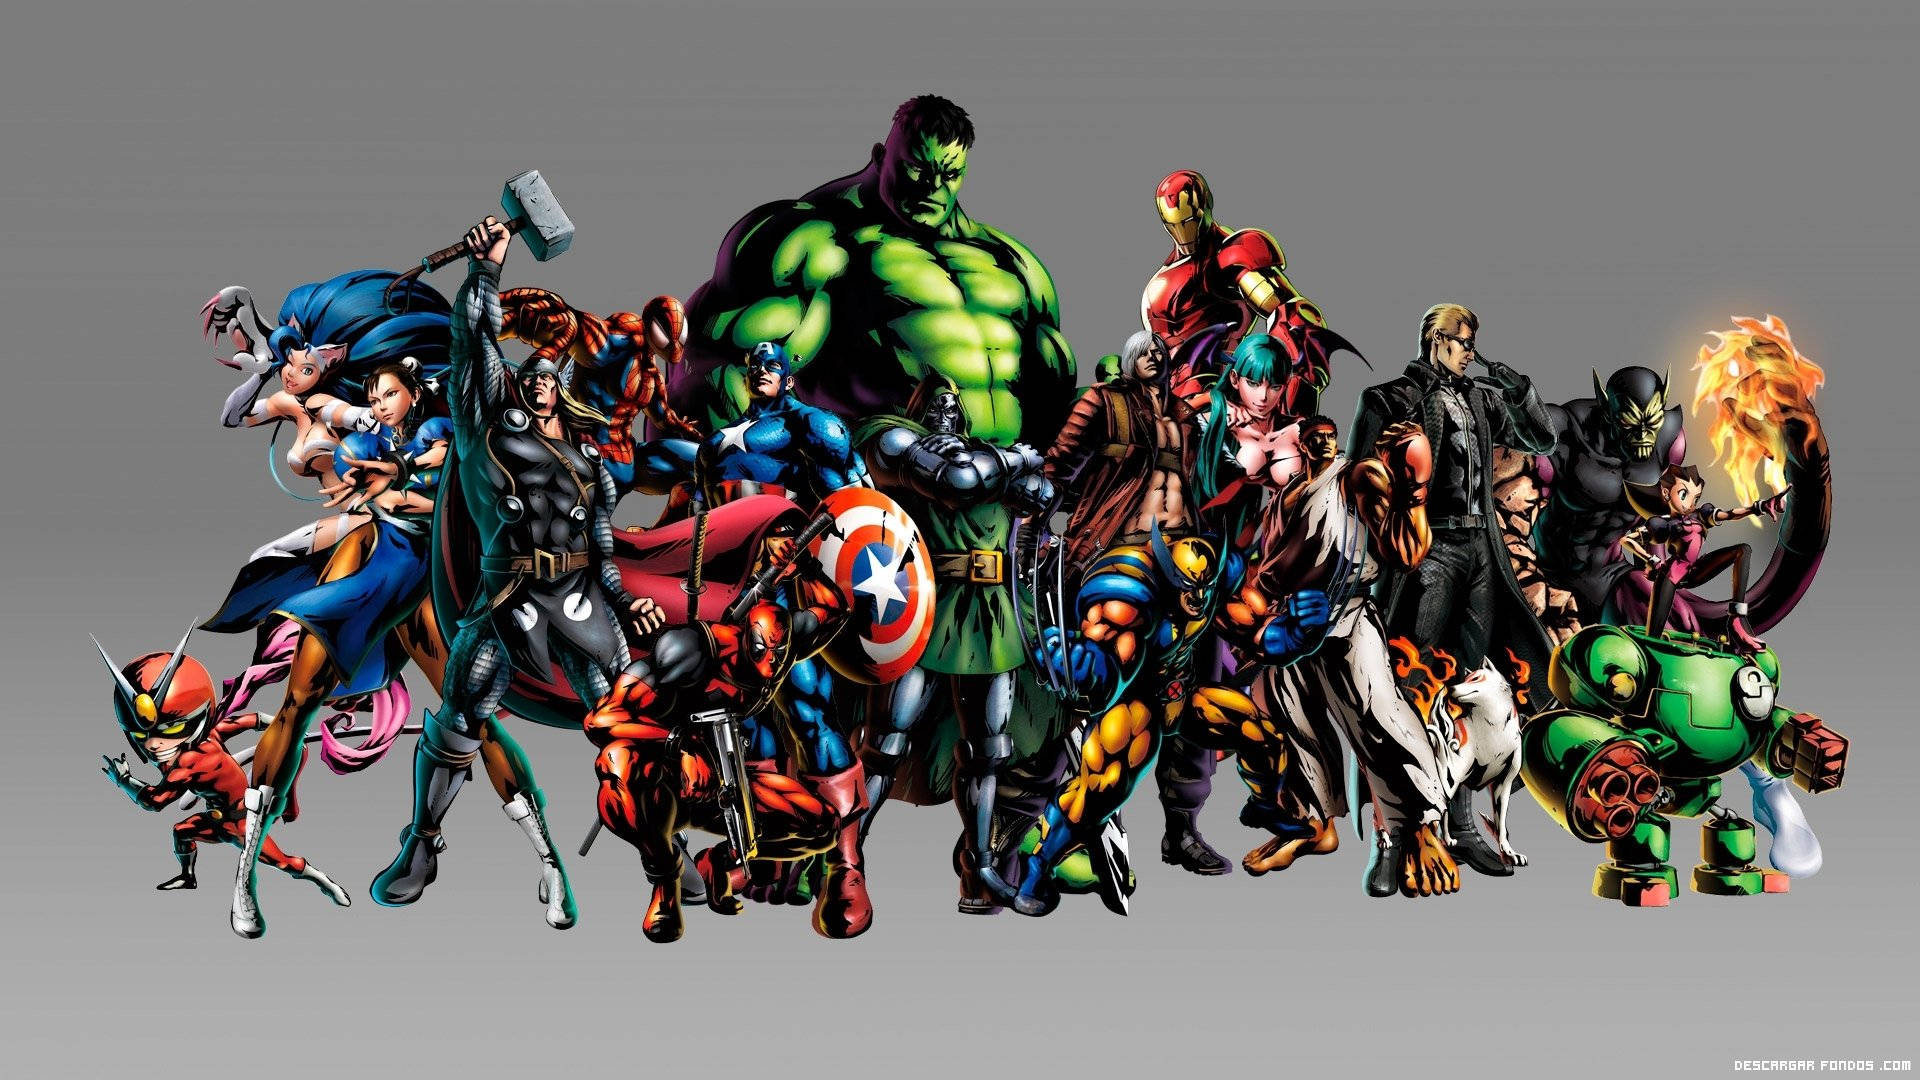 Caption: Asserting Dominance - Marvel's Avengers Assemble